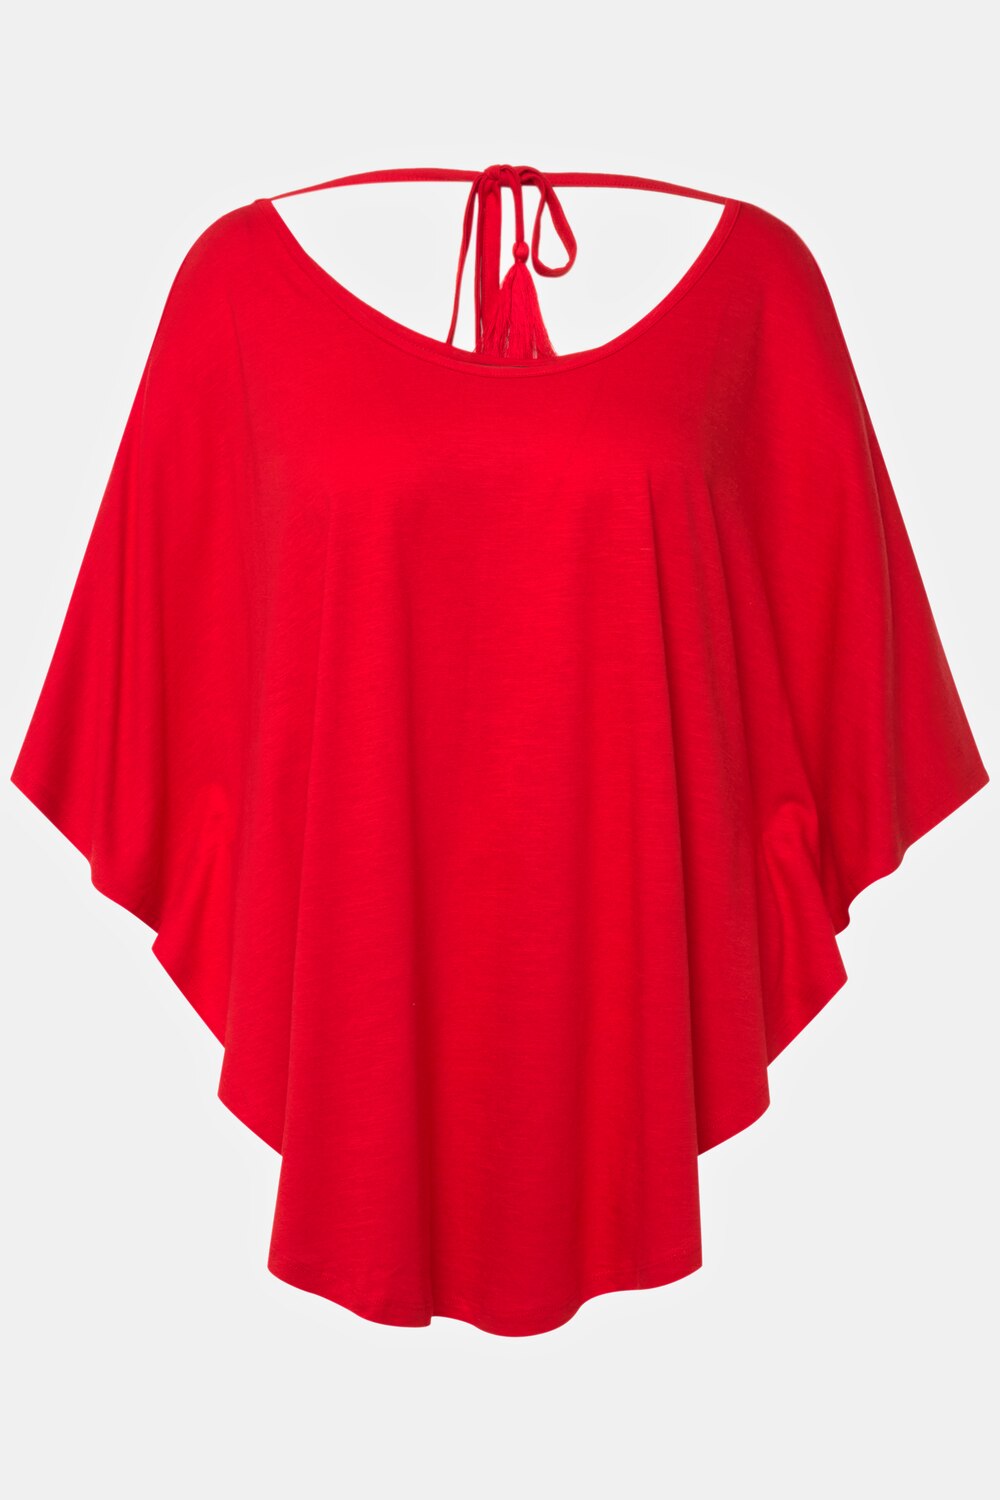 Grote Maten T-shirt kimono, Dames, rood, Maat: 54/56, Katoen/Synthetische vezels, Ulla Popken